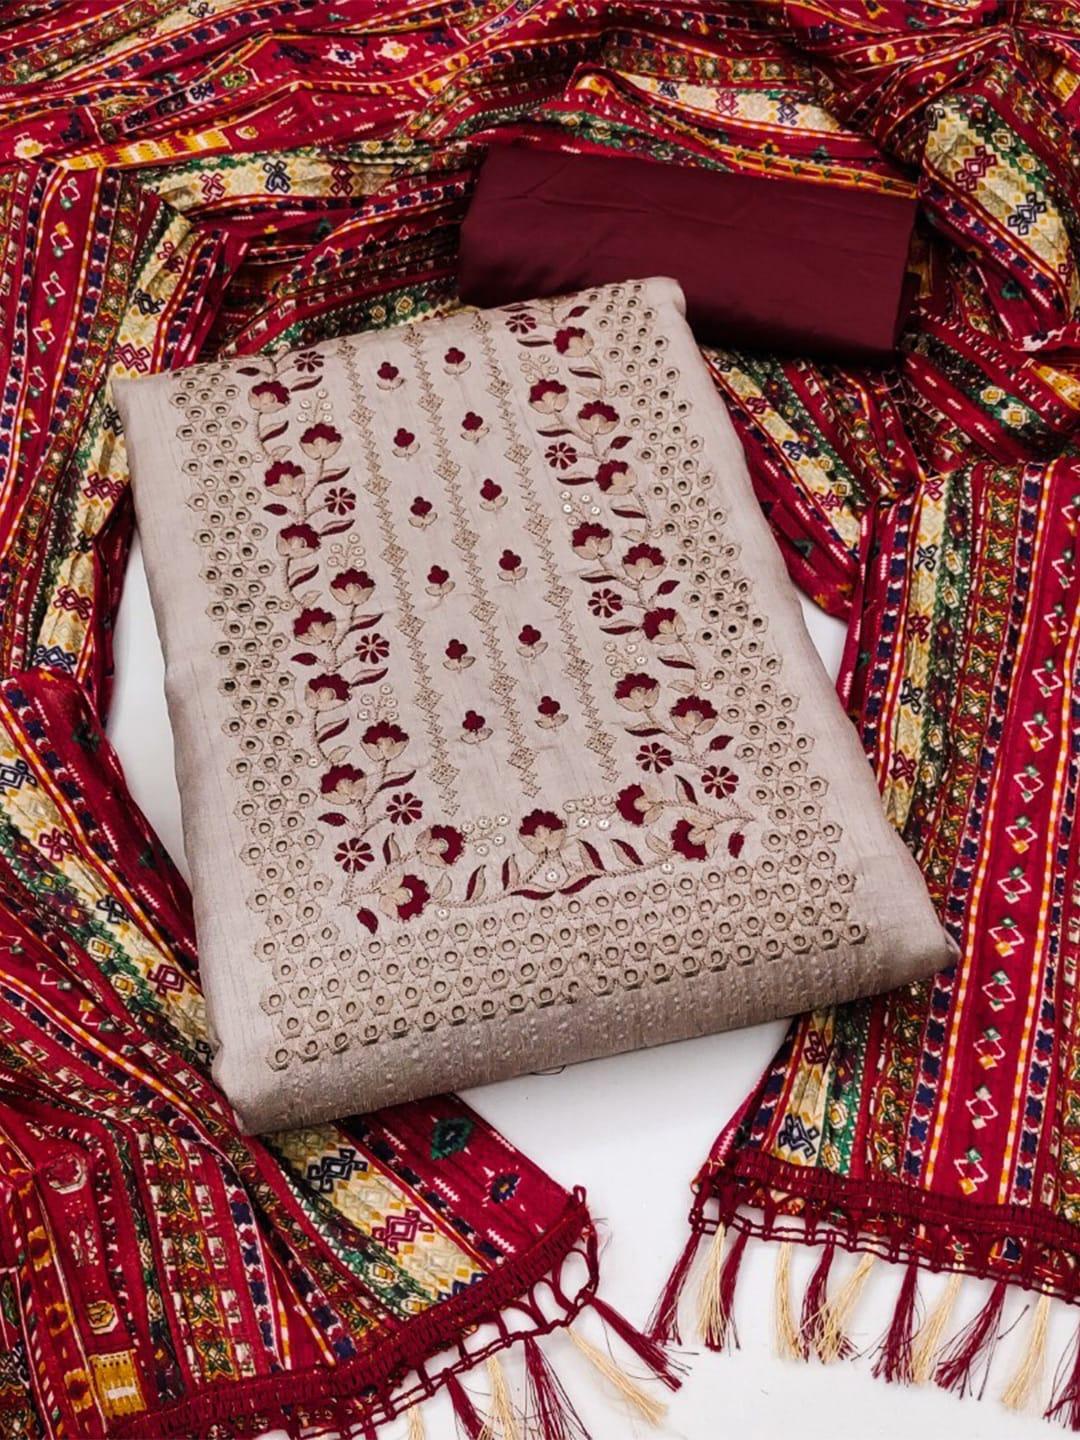 zeepkart-floral-embroidered-dress-material